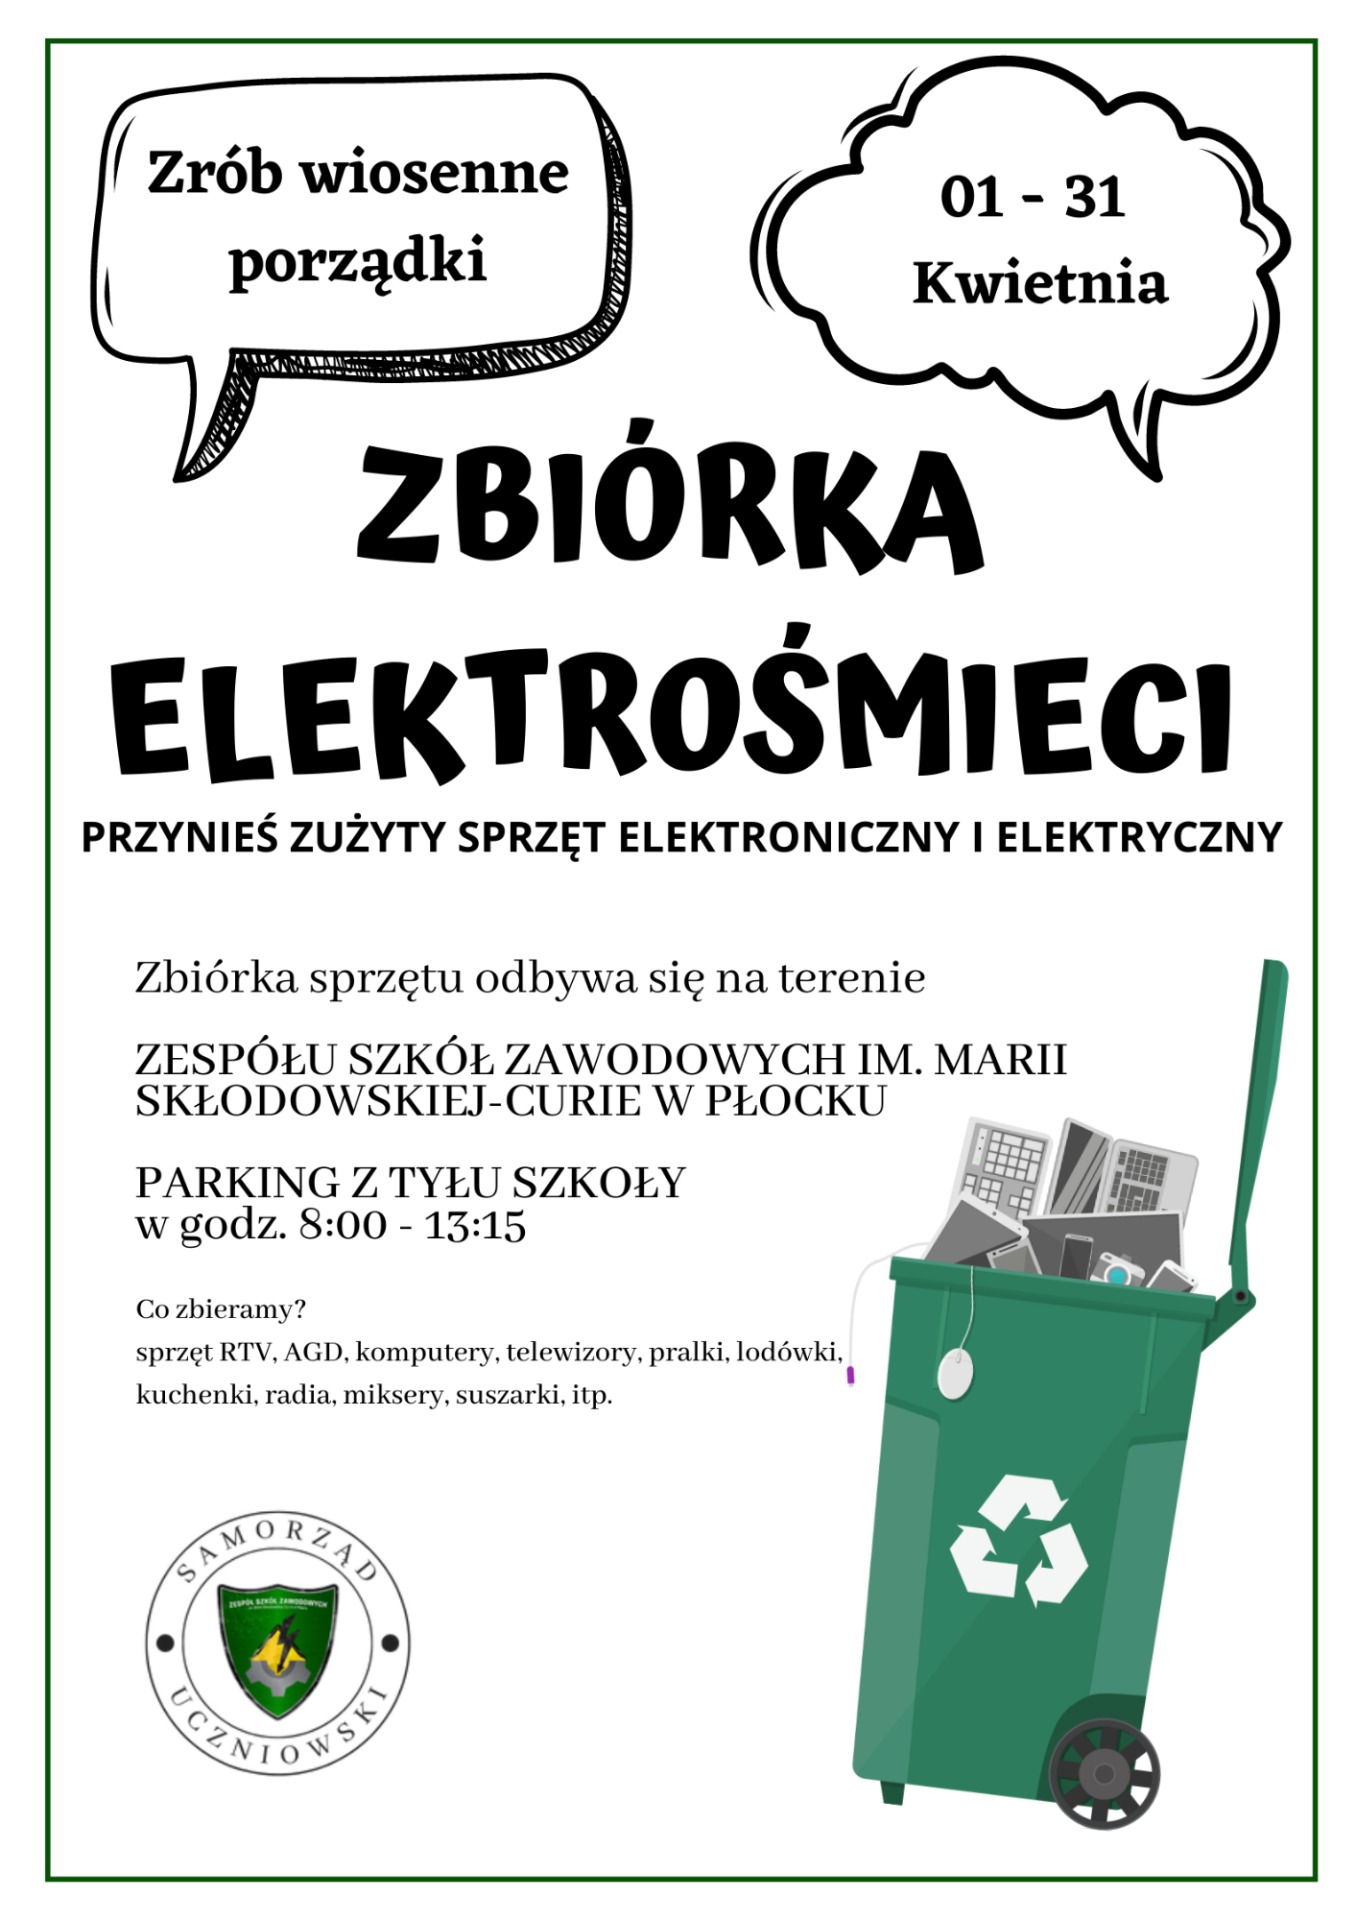 Plakat promujący zbiórkę elektrośmieci